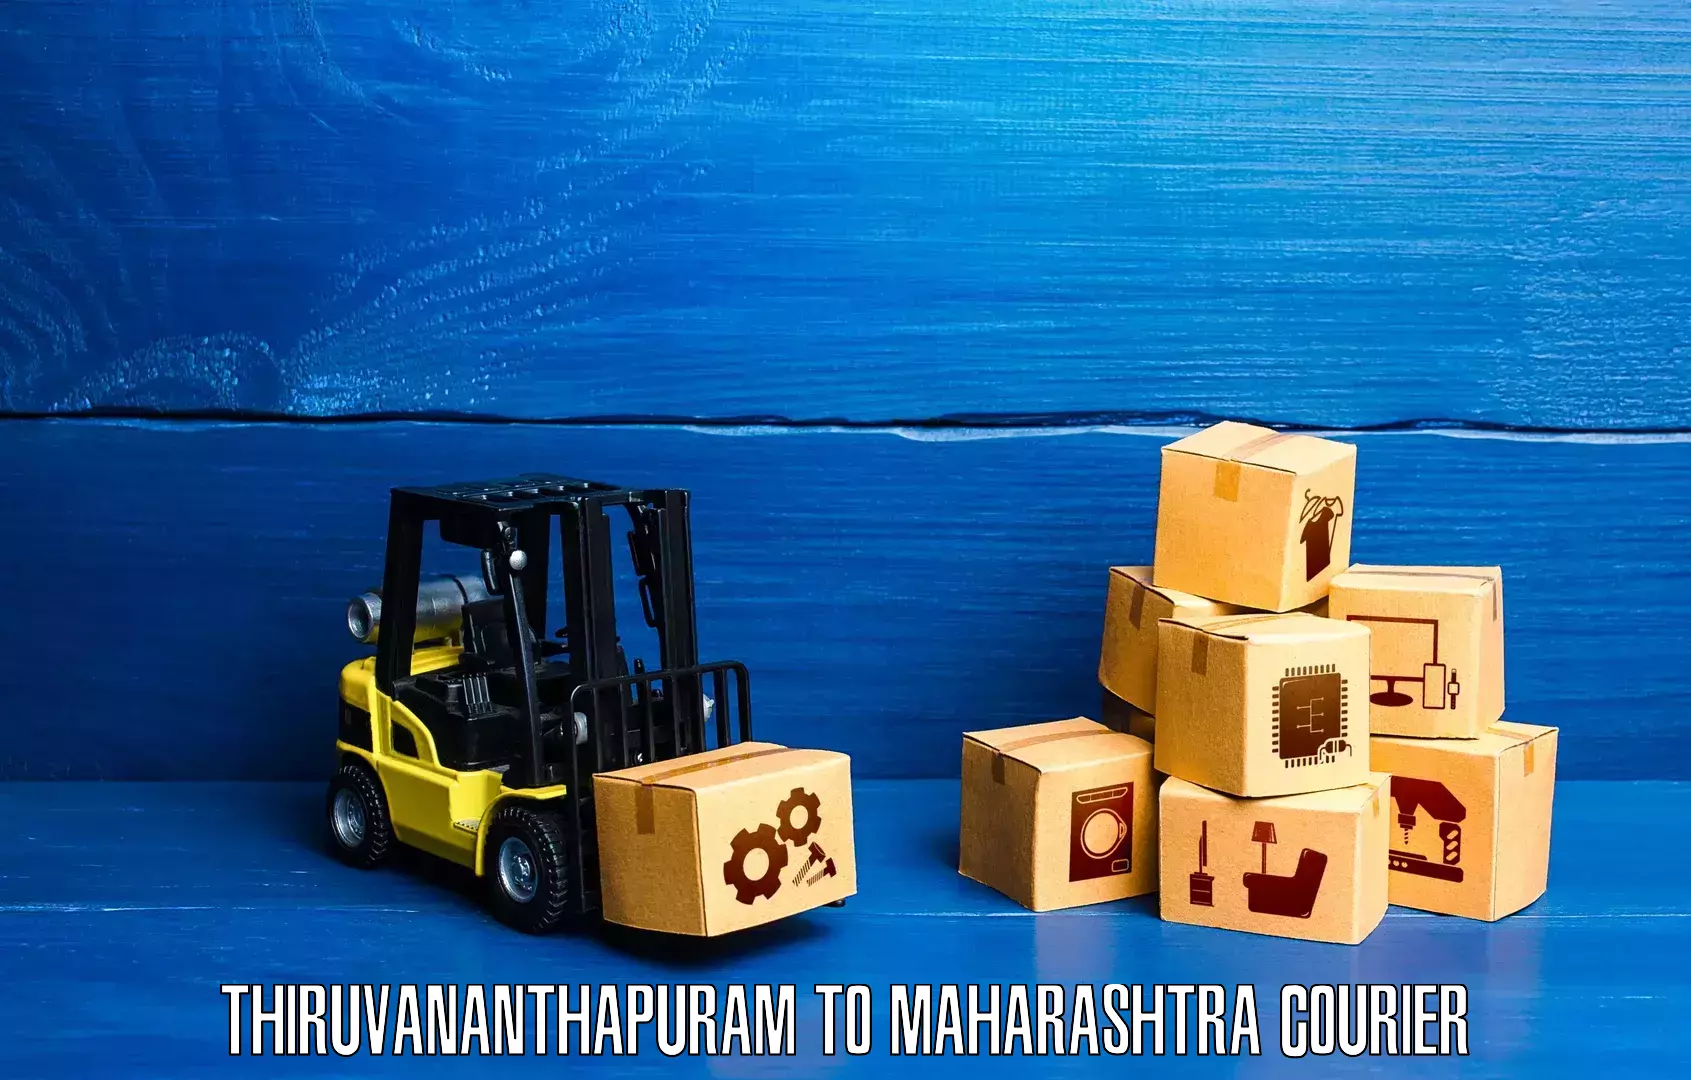 Global logistics network Thiruvananthapuram to Barshi